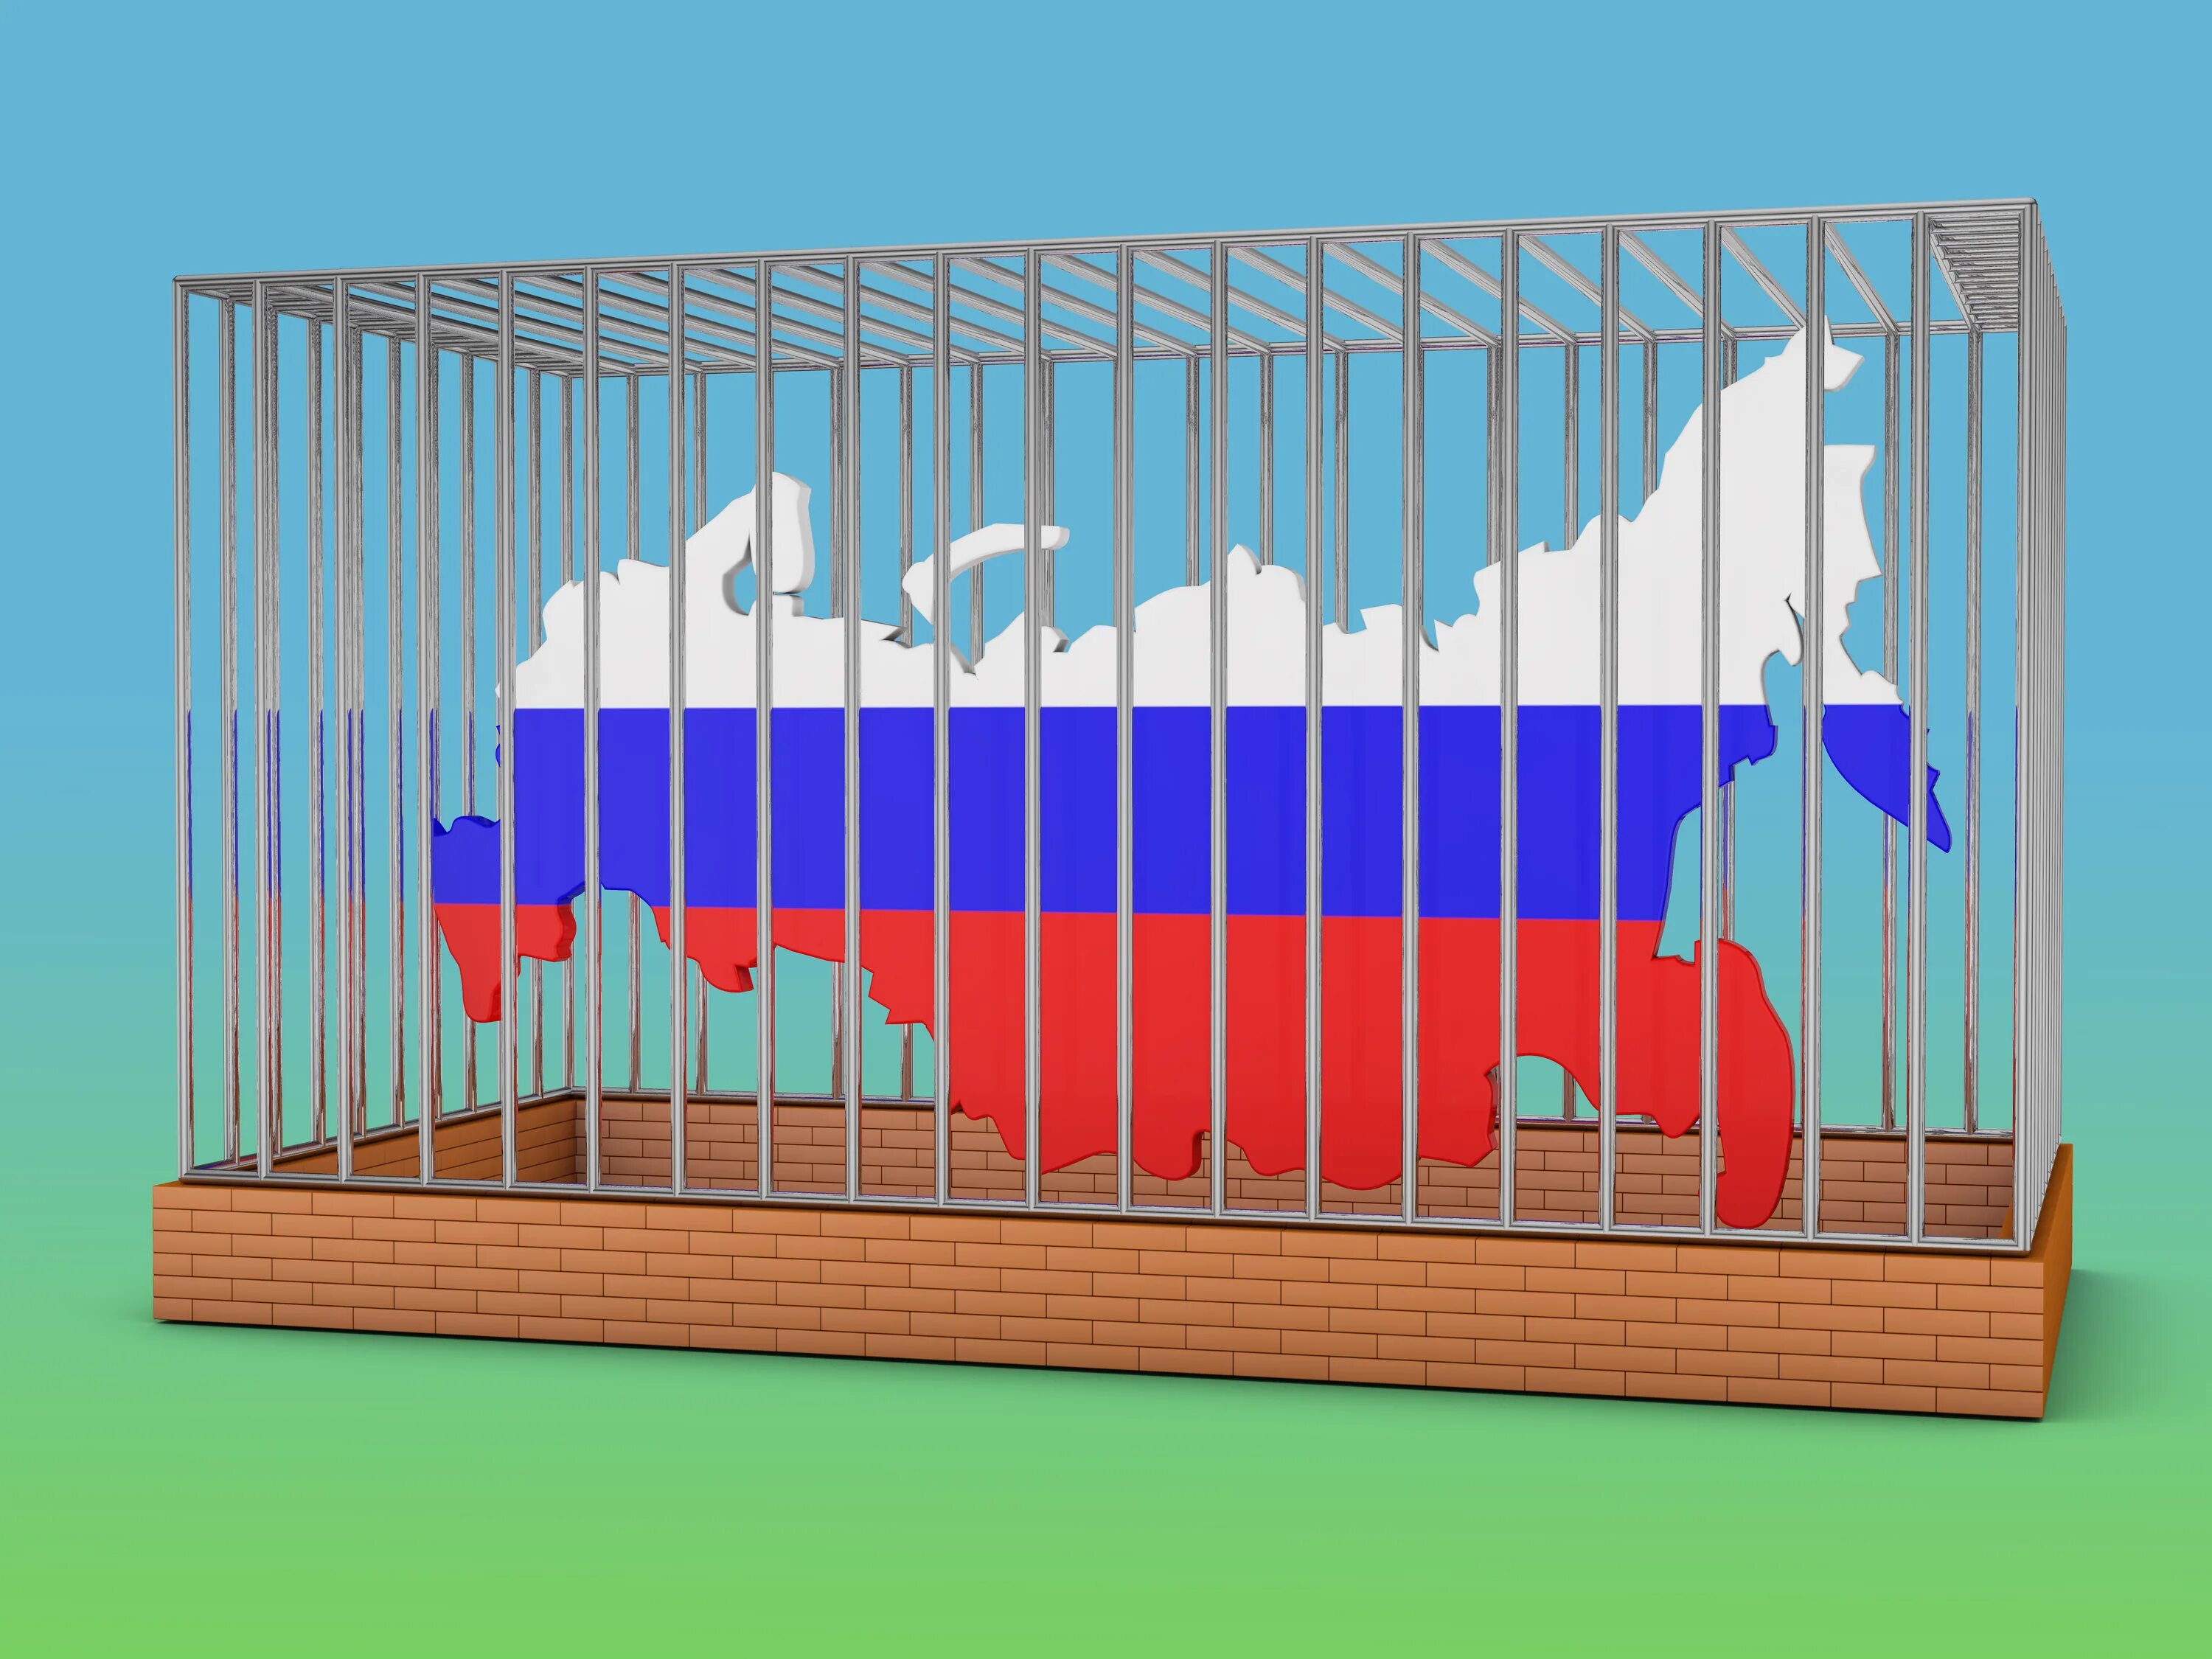 Страна изолирована. Изоляция страны. Изоляция России. Железный занавес иллюстрация.